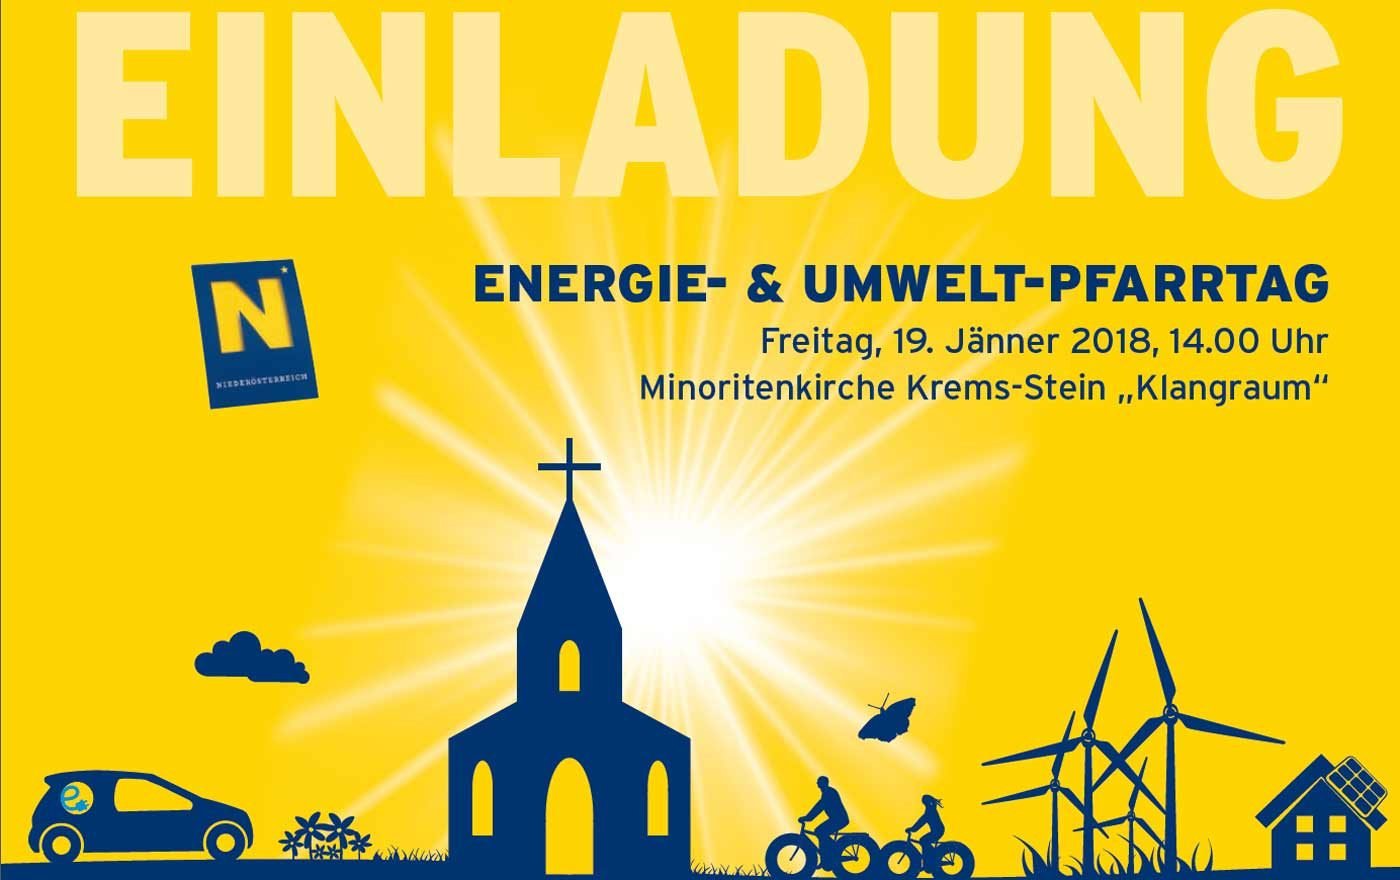 Themen des Umweltpfarrtags sind u.a. nachhaltige Pfarrfeste, Biodiversität, Schöpfungsverantwortung, umweltverträgliche Mobilität sowie das Energiesparen. Foto: Energie- und Umweltagentur Niederösterreich